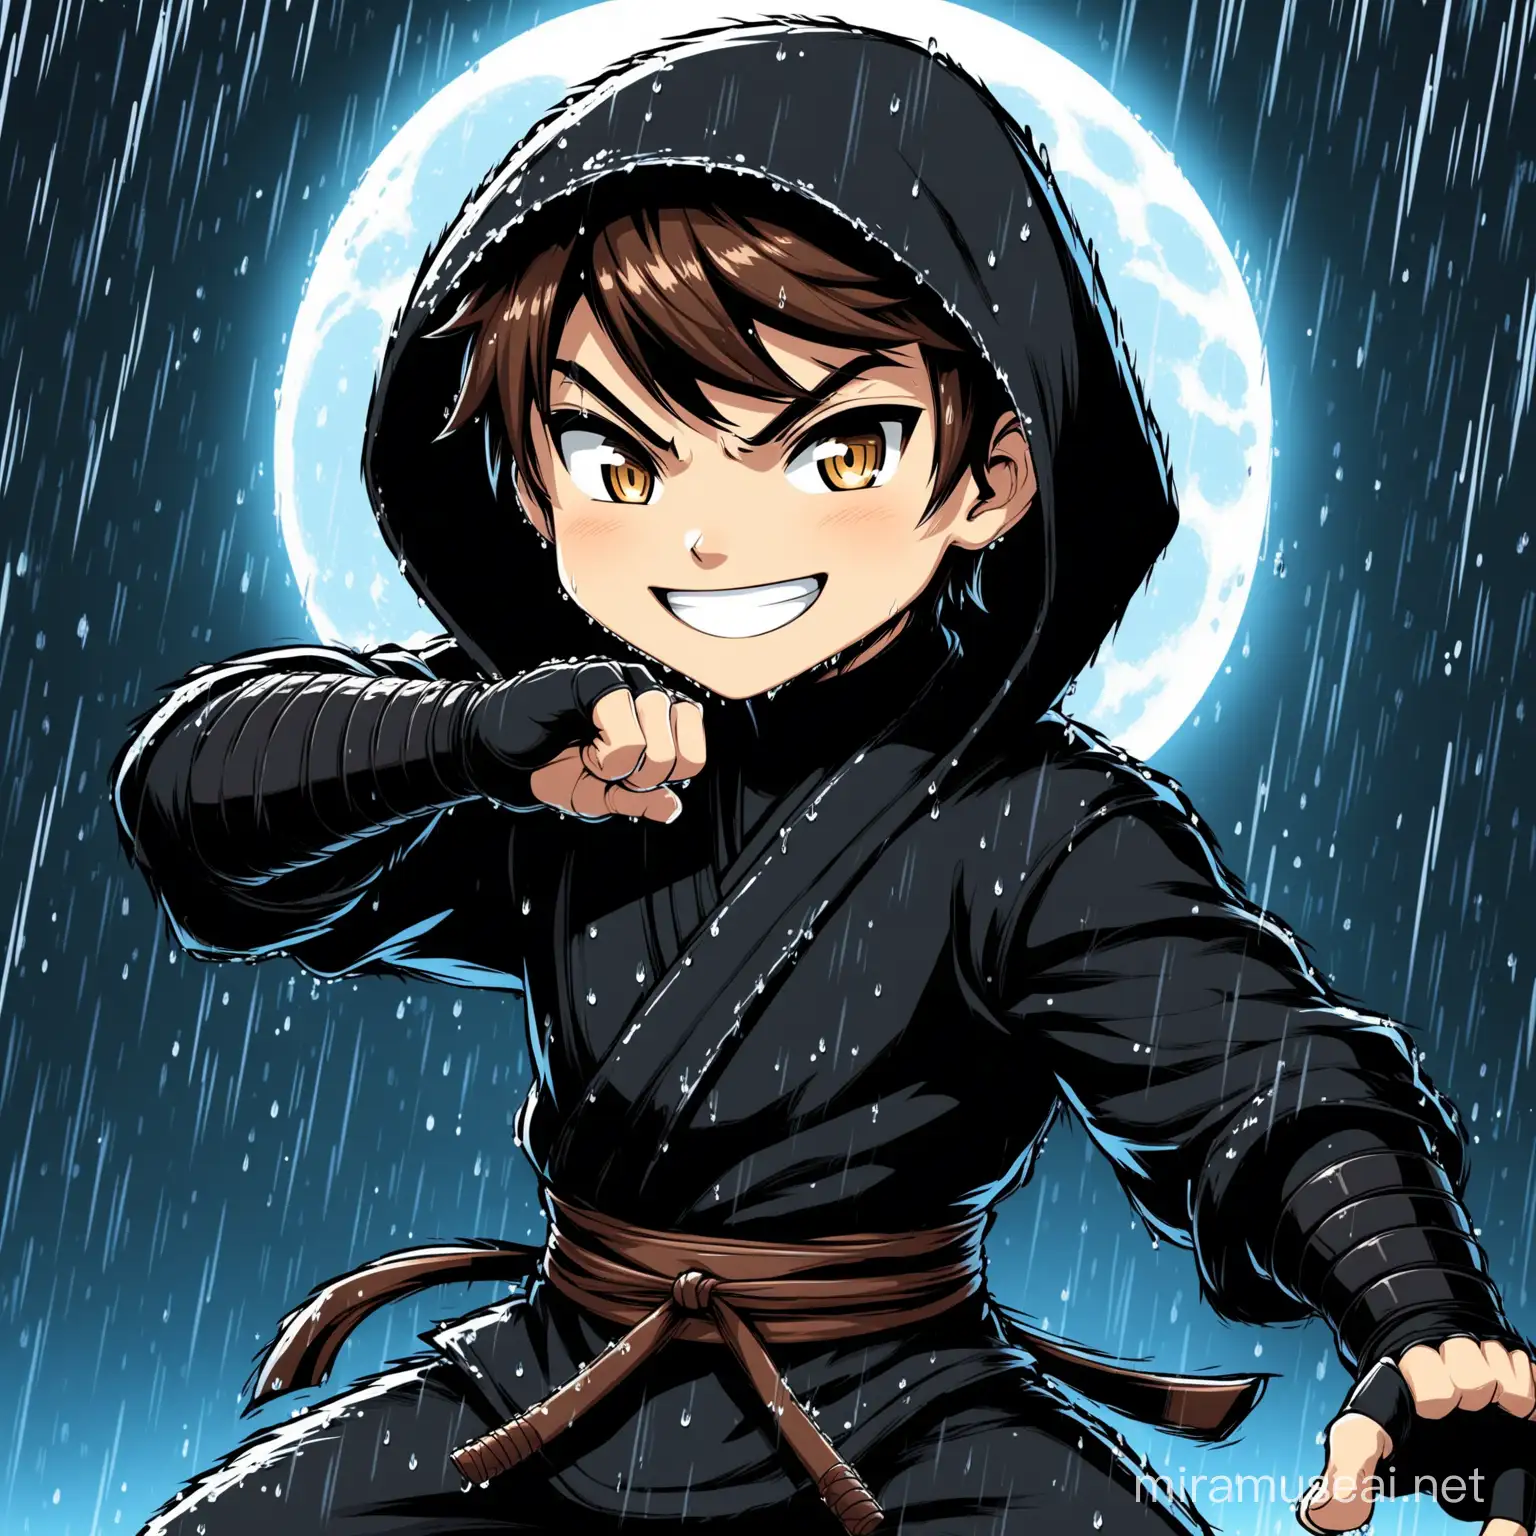 Cartoon ninja boy, Süßer Ninja in komplett schwarzem Outfit mit dunklen Hintergrund und Mondschein, etwas regen, Ninja WafHaltung , hohe Details, Comic Style, brown hair, smiling